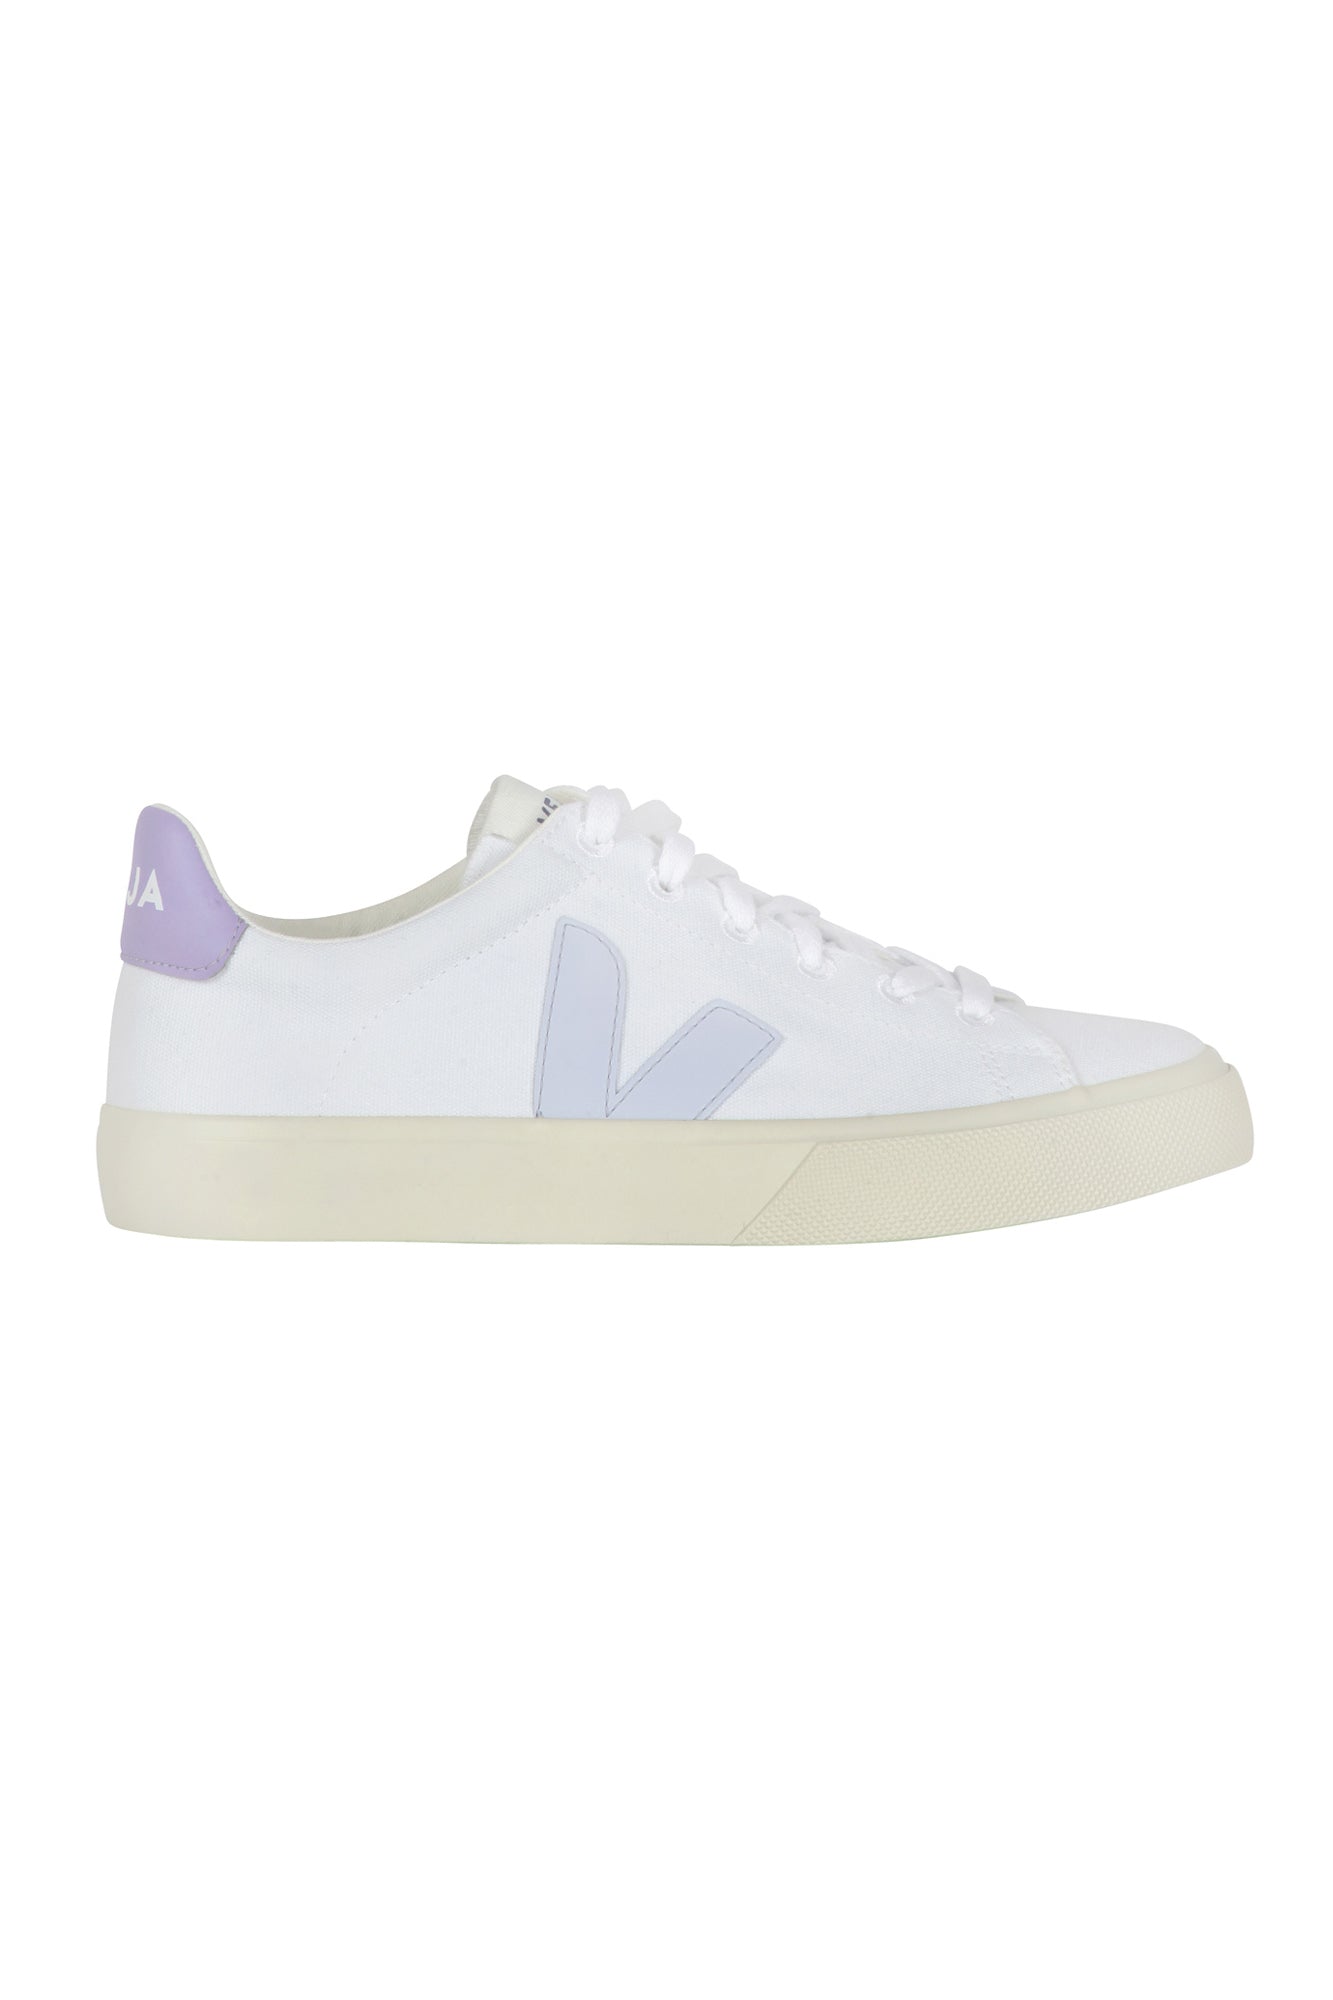 Veja - Sneakers - 430606 - Bianco/Lilla